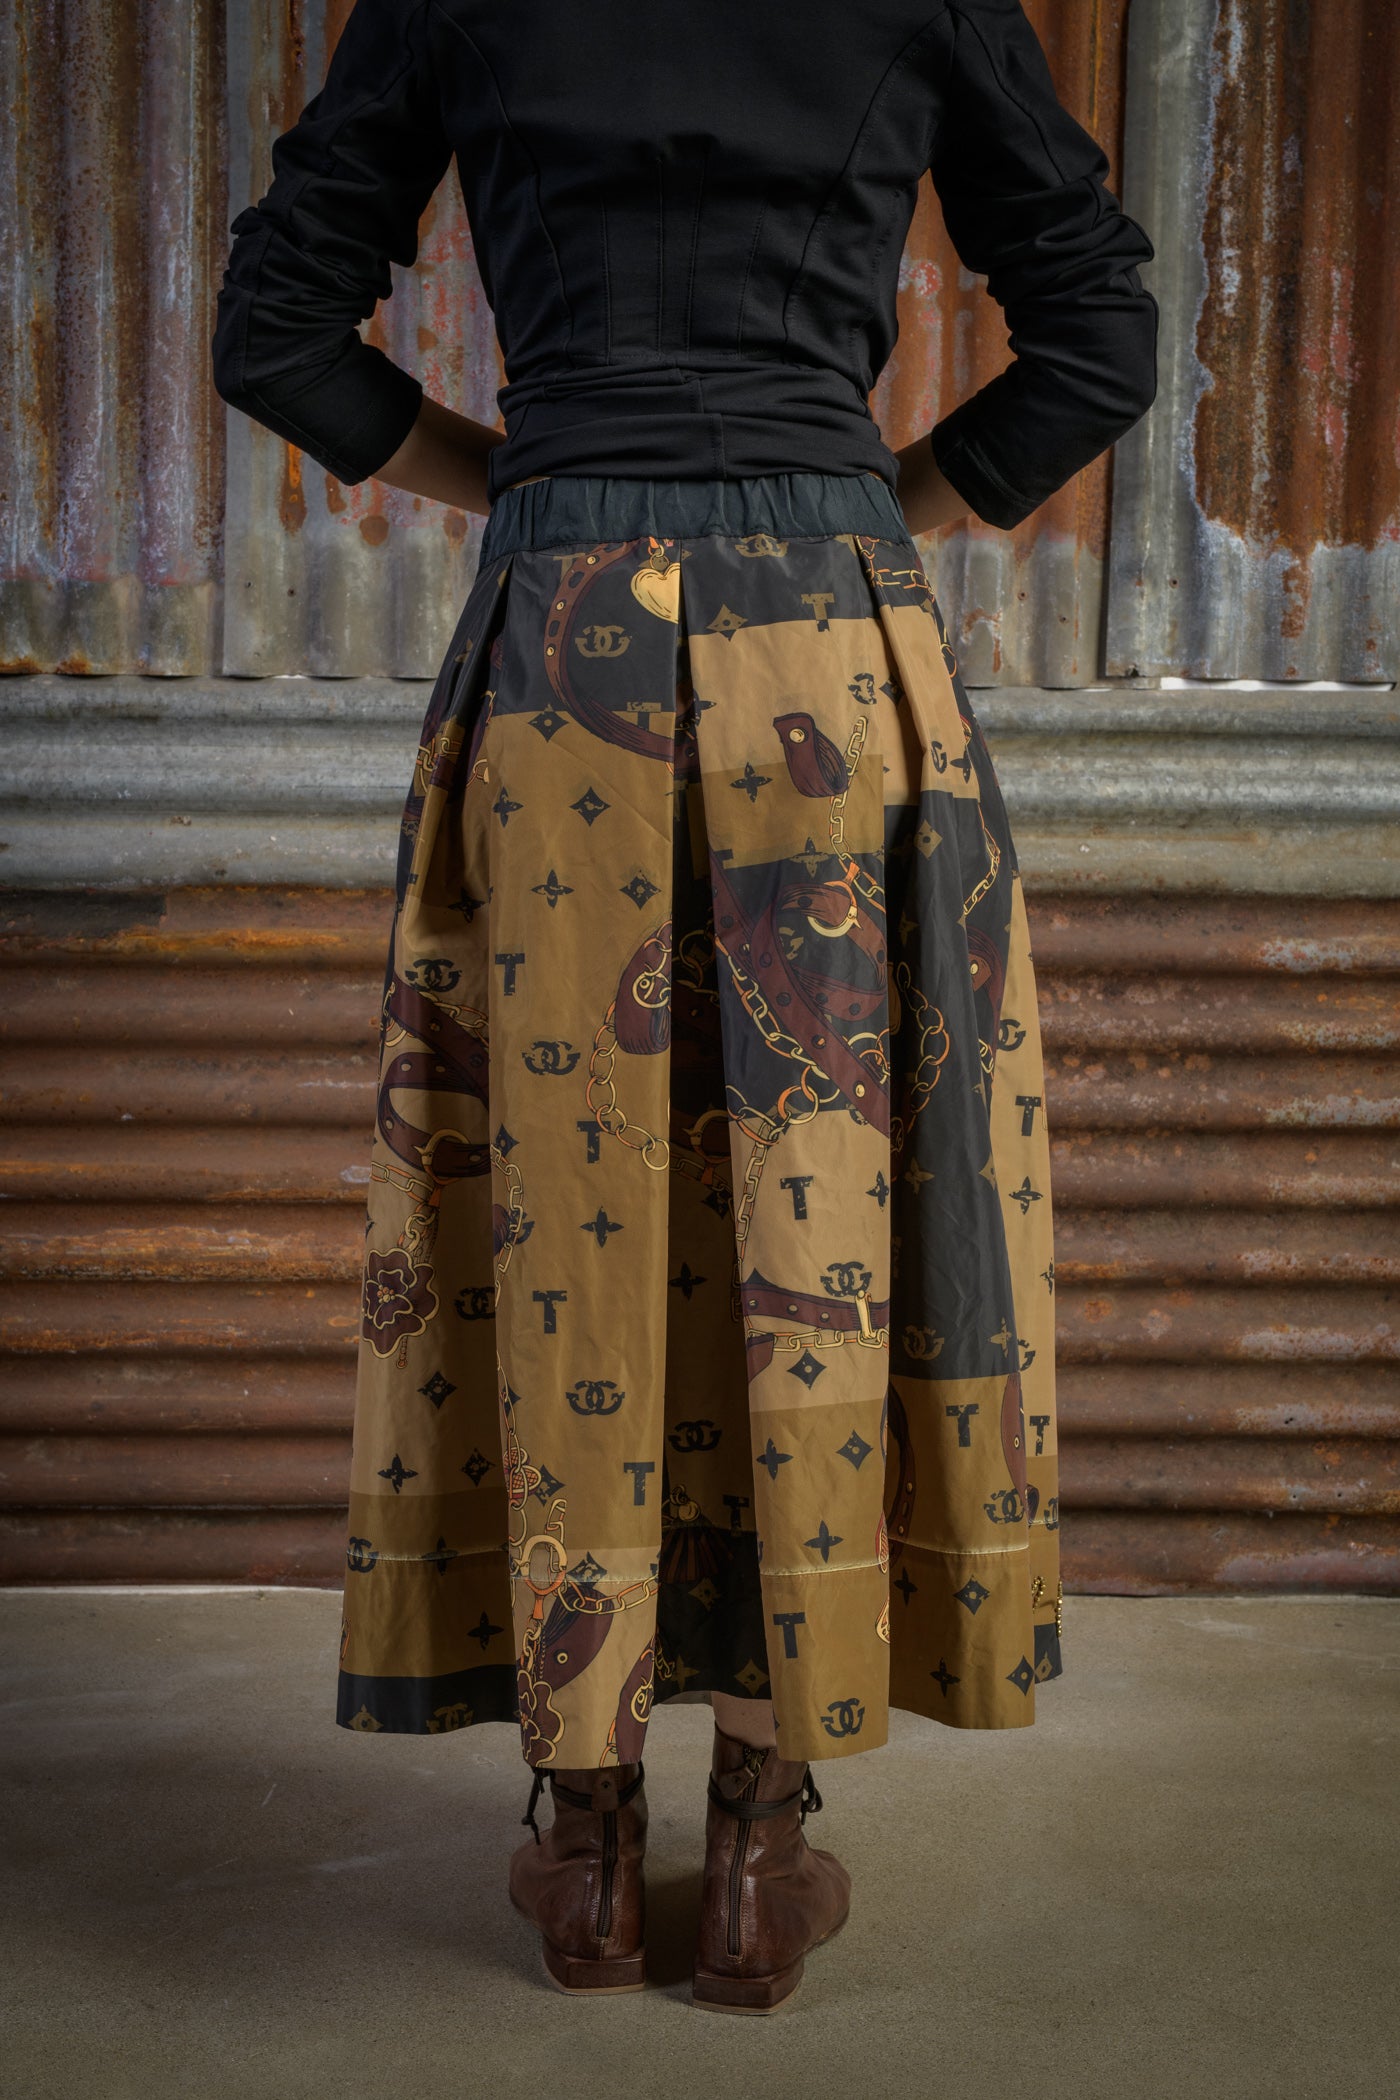 Printed Taffeta Skirt with Hand-Embroidered Border